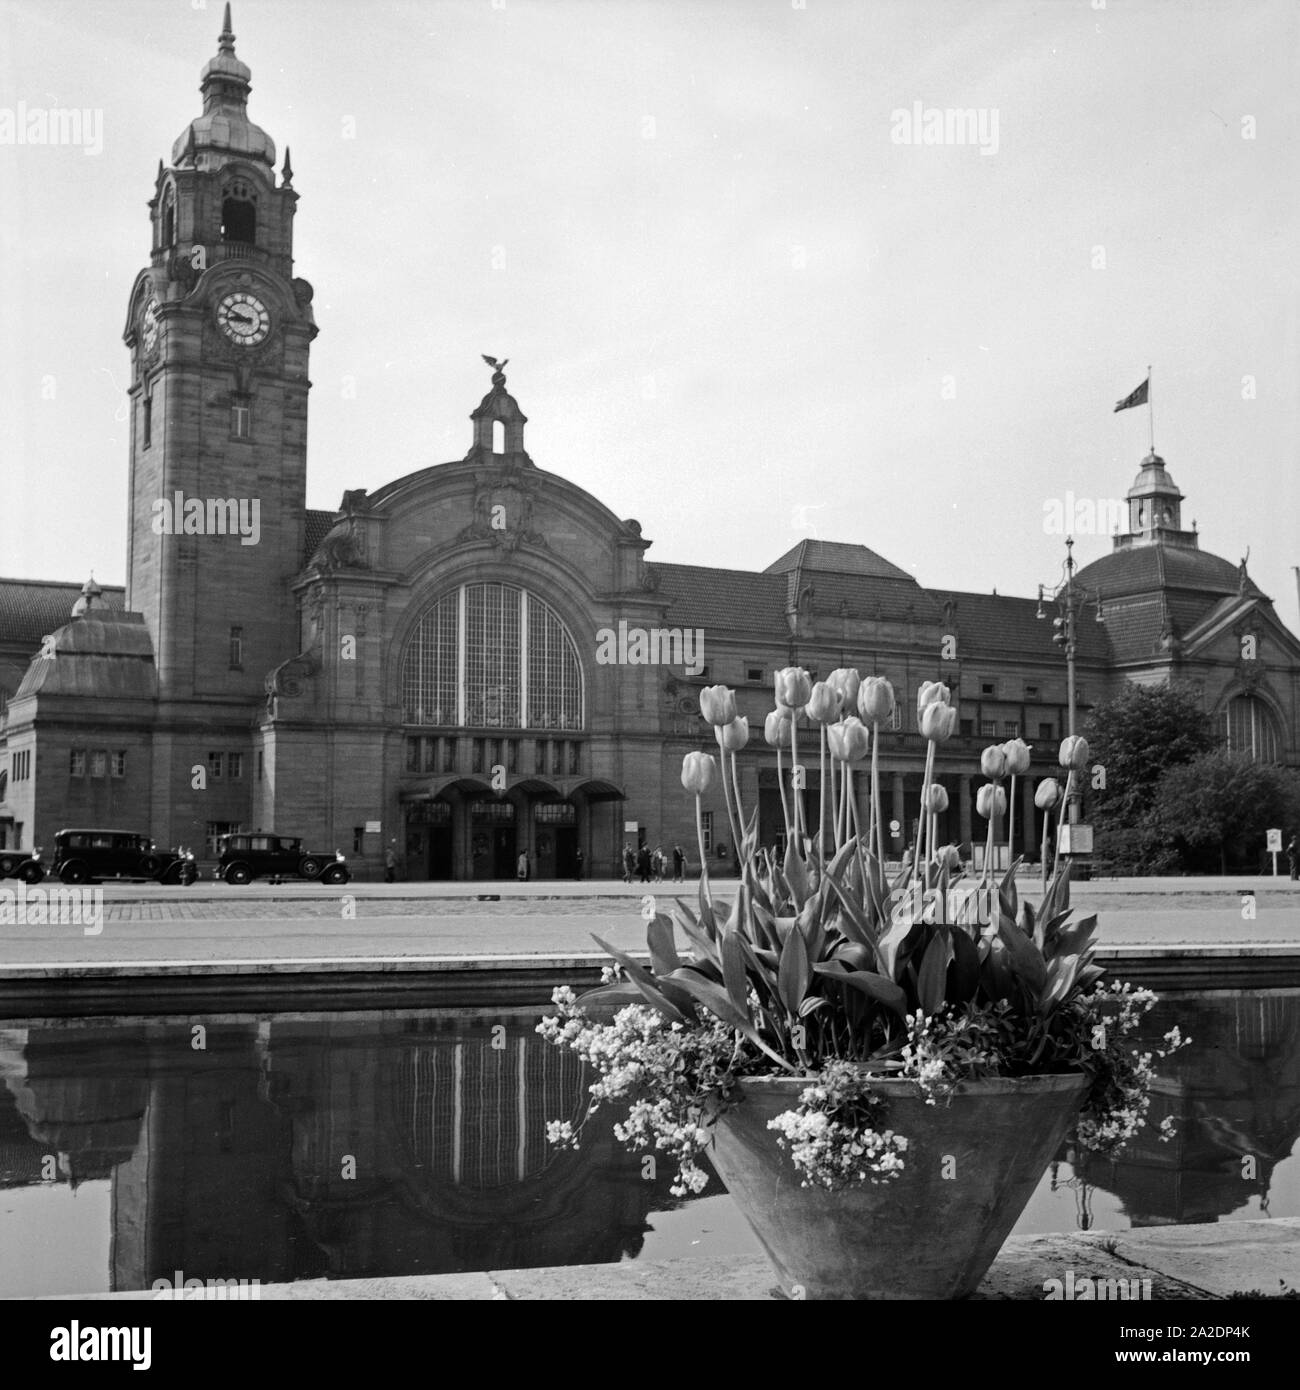 Blick auf den Hauptbahnhof à Wiesbaden, Allemagne Allemagne Années 1930 er Jahre. Vue de la gare centrale de Wiesbaden avec une fontaine en frint, Allemagne 1930. Banque D'Images